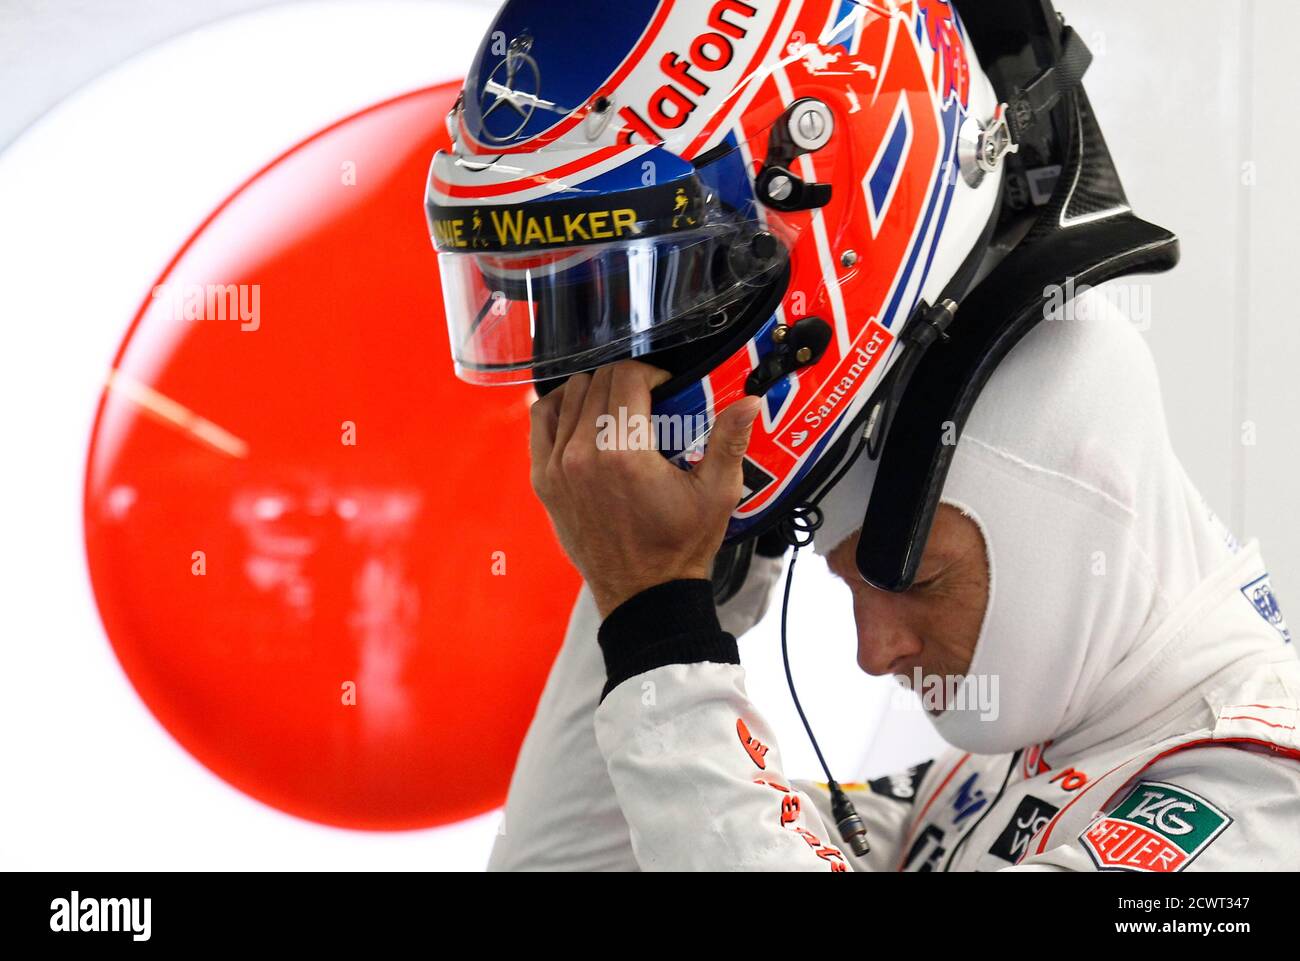 McLaren Formel1-Fahrer Jenson Button von Großbritannien übernimmt seinen Helm während des zweiten Trainings von der F1 Grand Prix von Kanada auf dem Circuit Gilles Villeneuve in Montreal 7. Juni 2013. REUTERS/Chris Wattie (Kanada - Tags: SPORT MOTORSPORT F1) Stockfoto